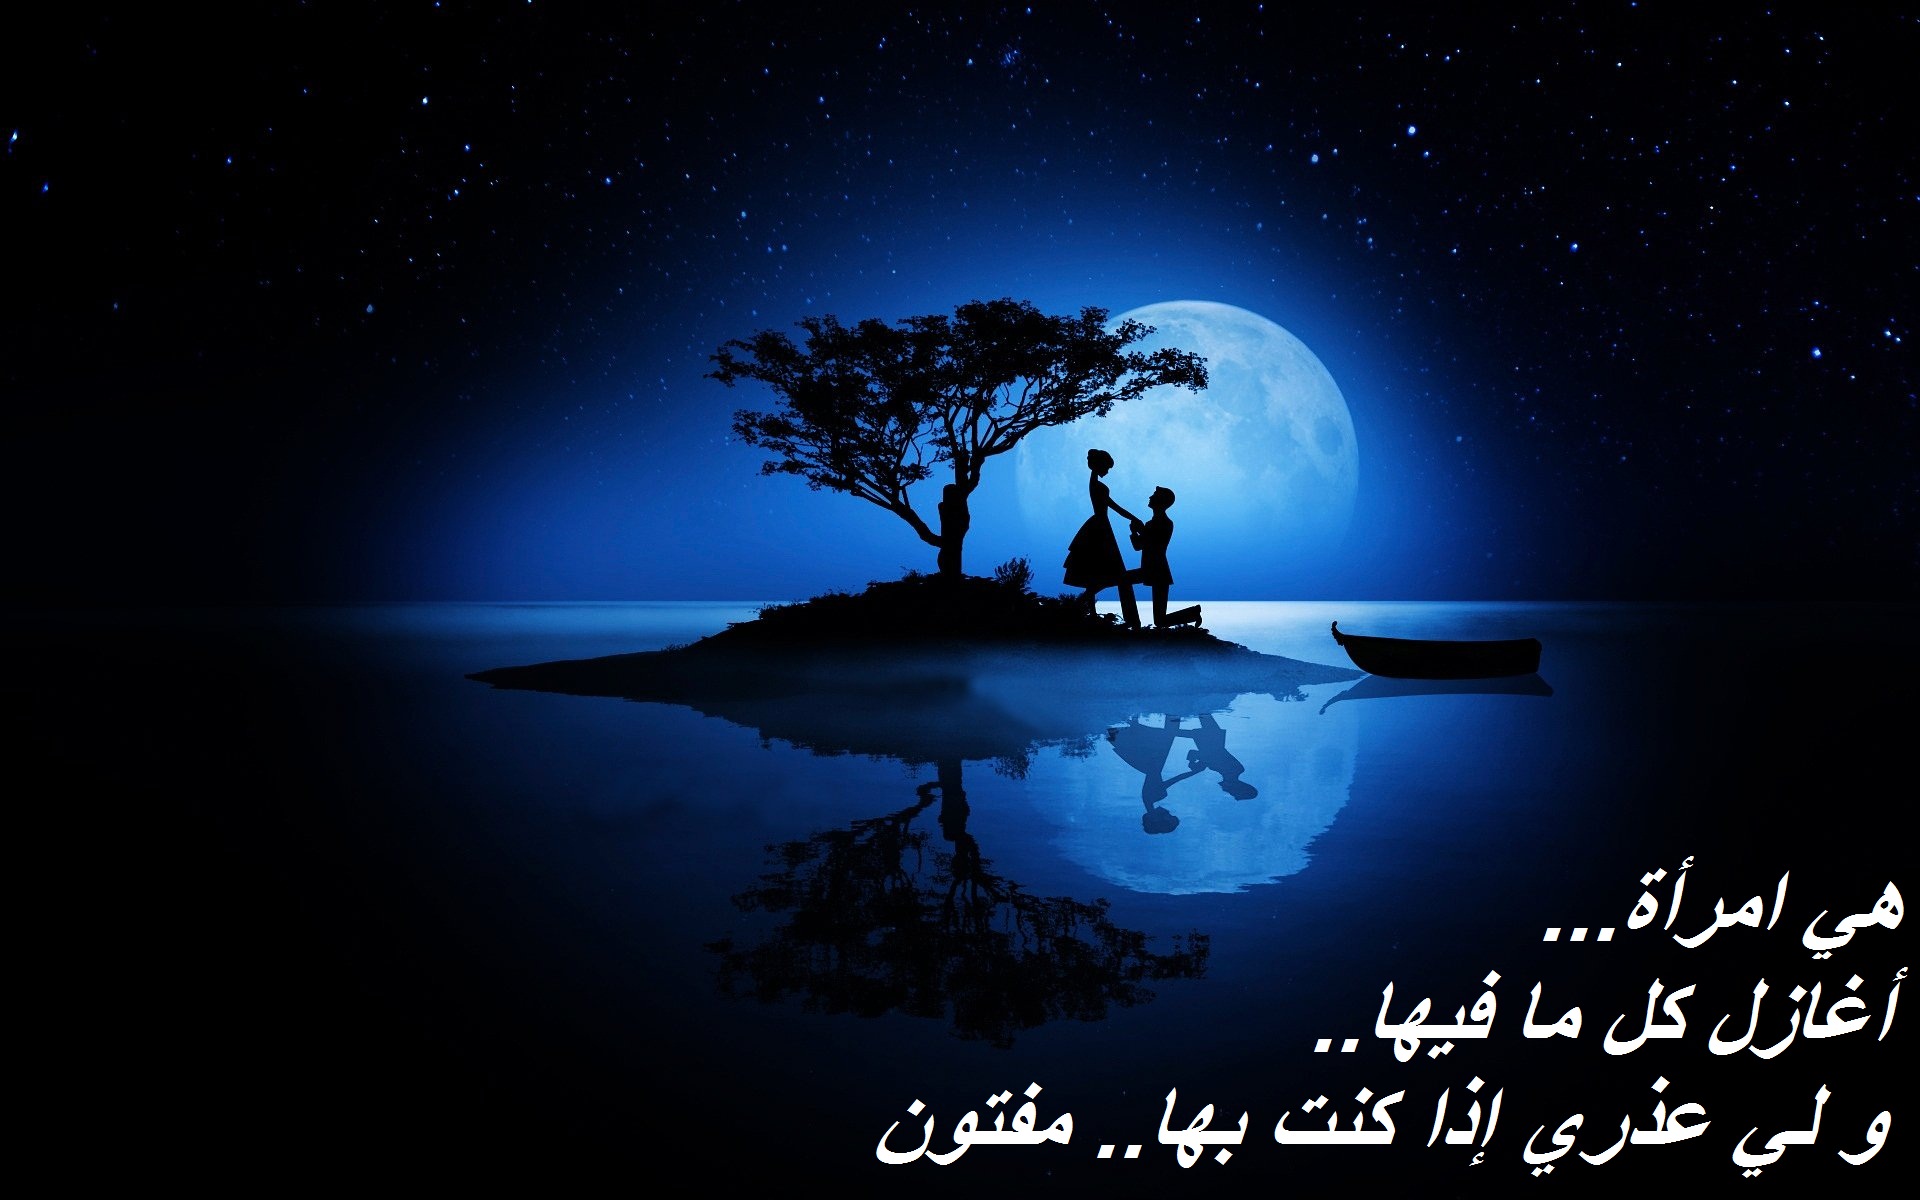 صورة رومانسية لكابيل و قمر و مكتوب عليها كلام غزل و حب.